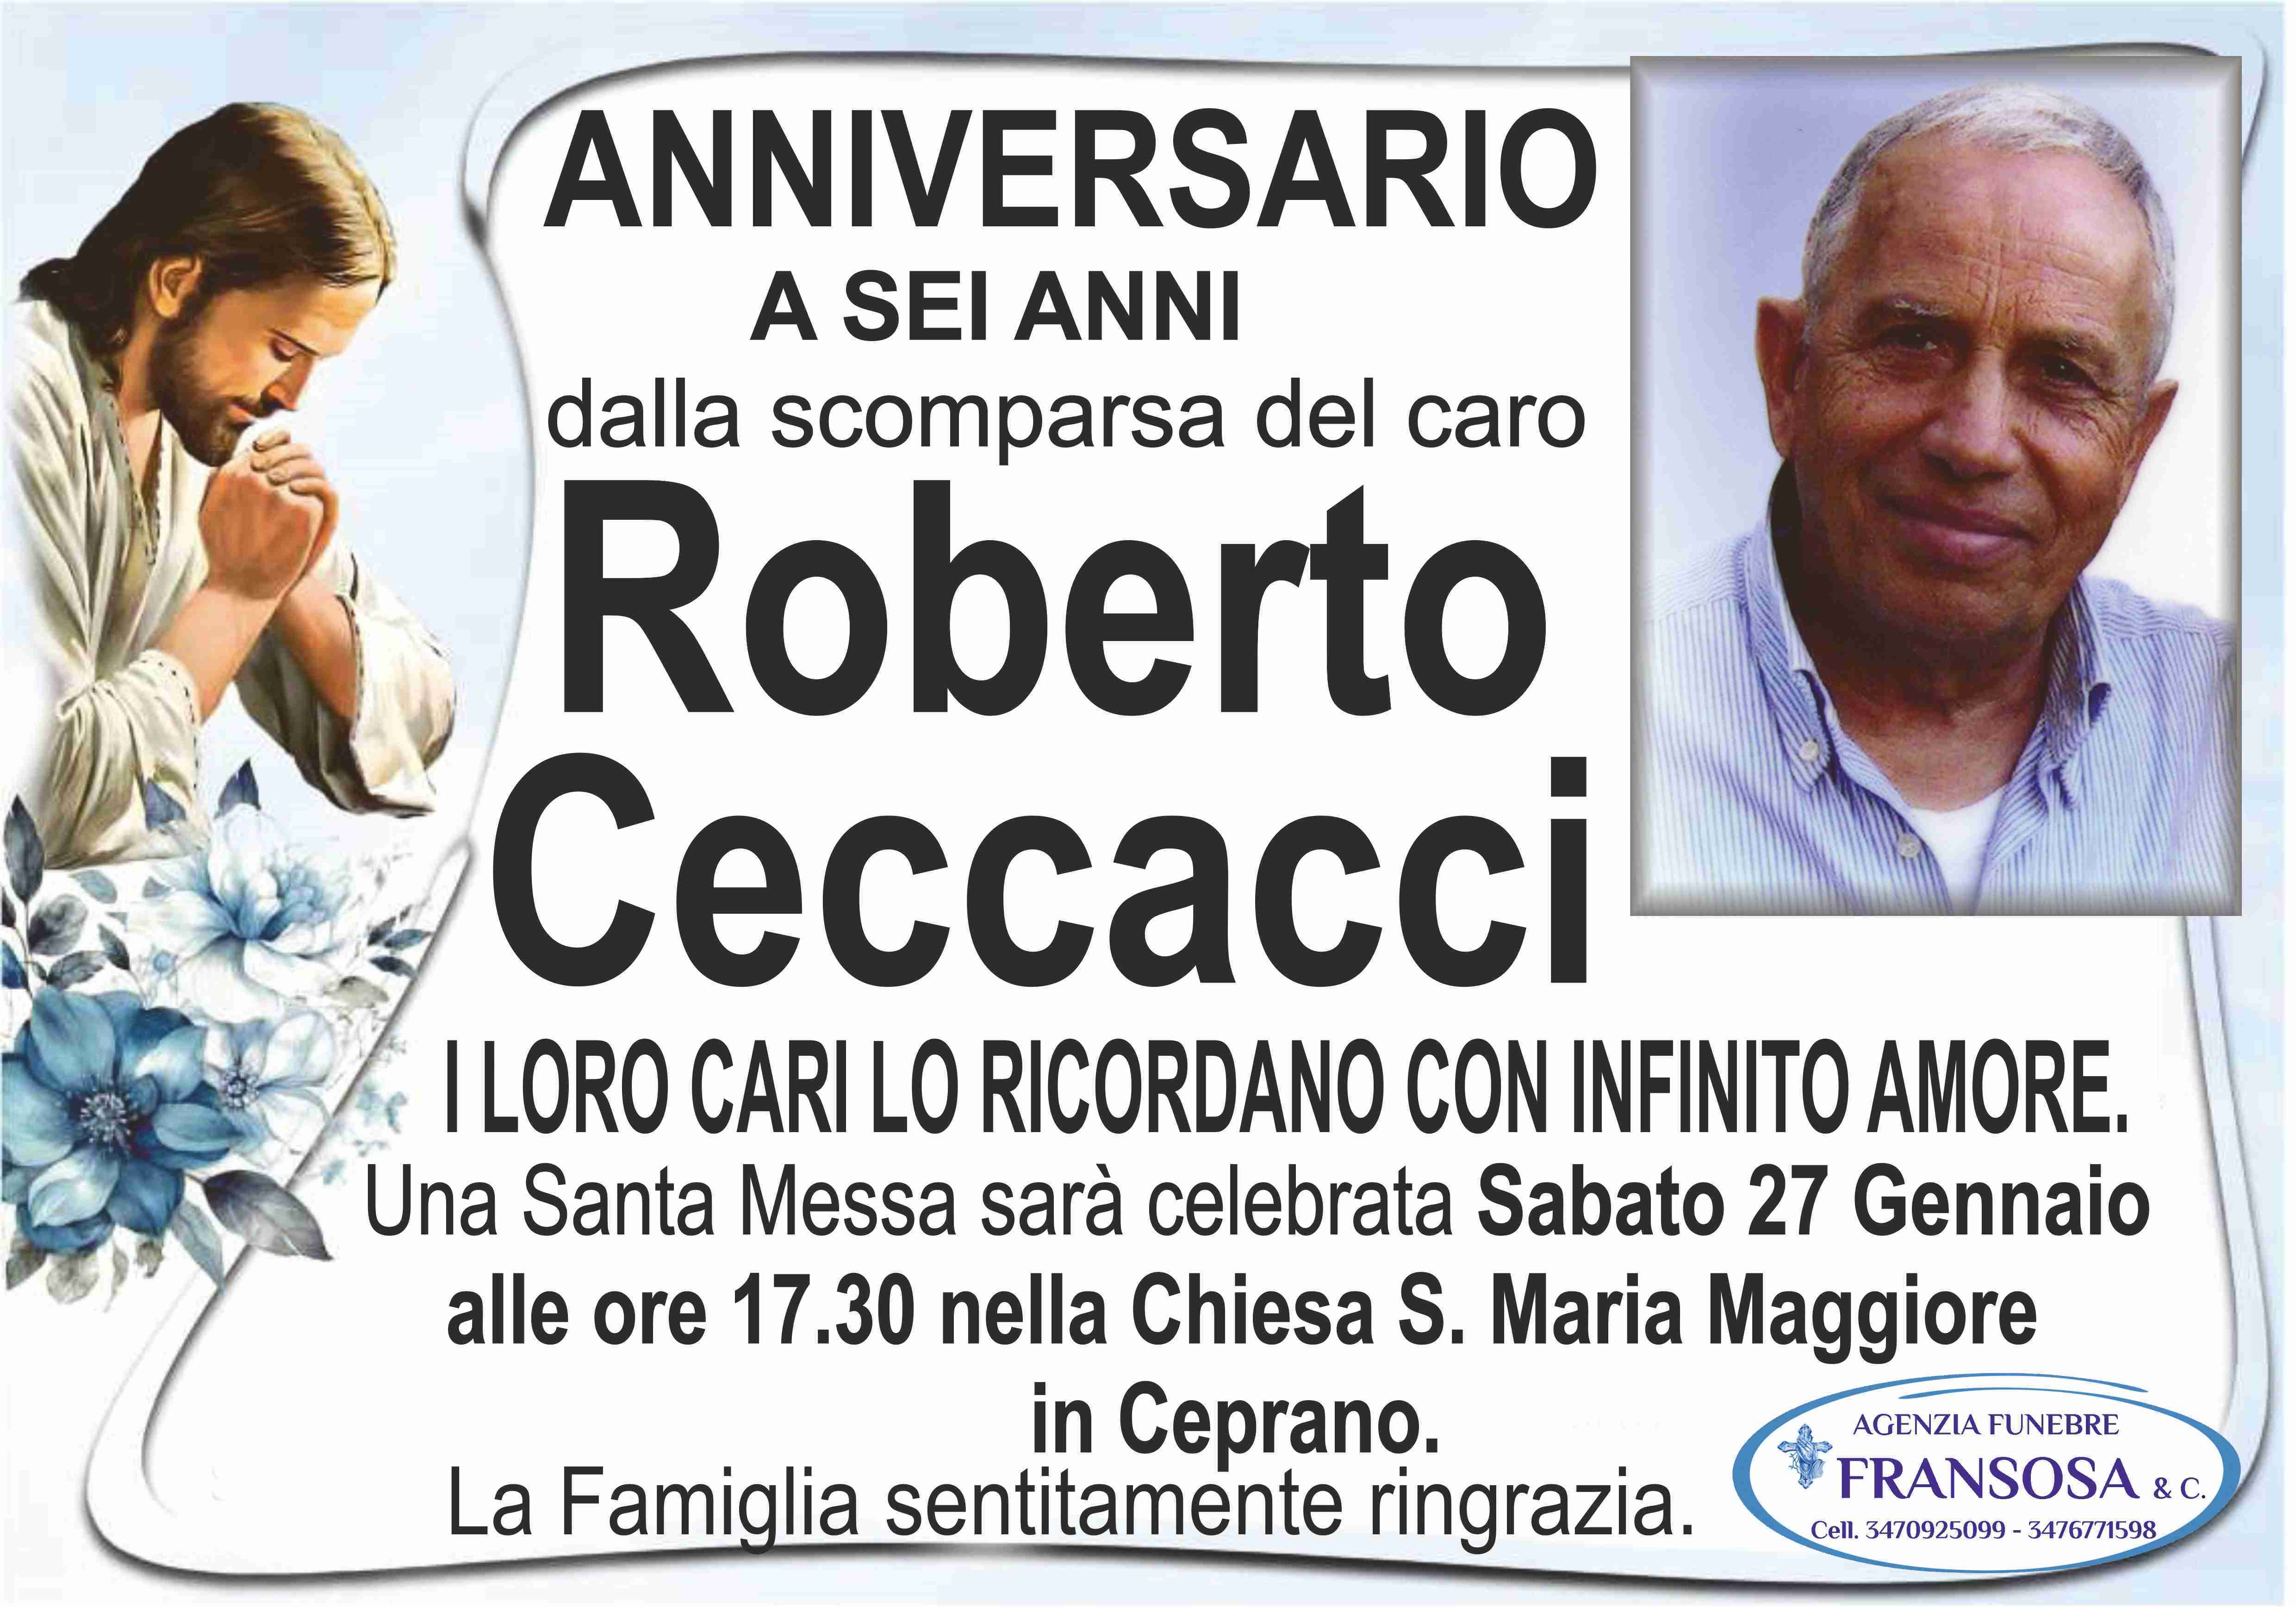 Roberto Ceccacci